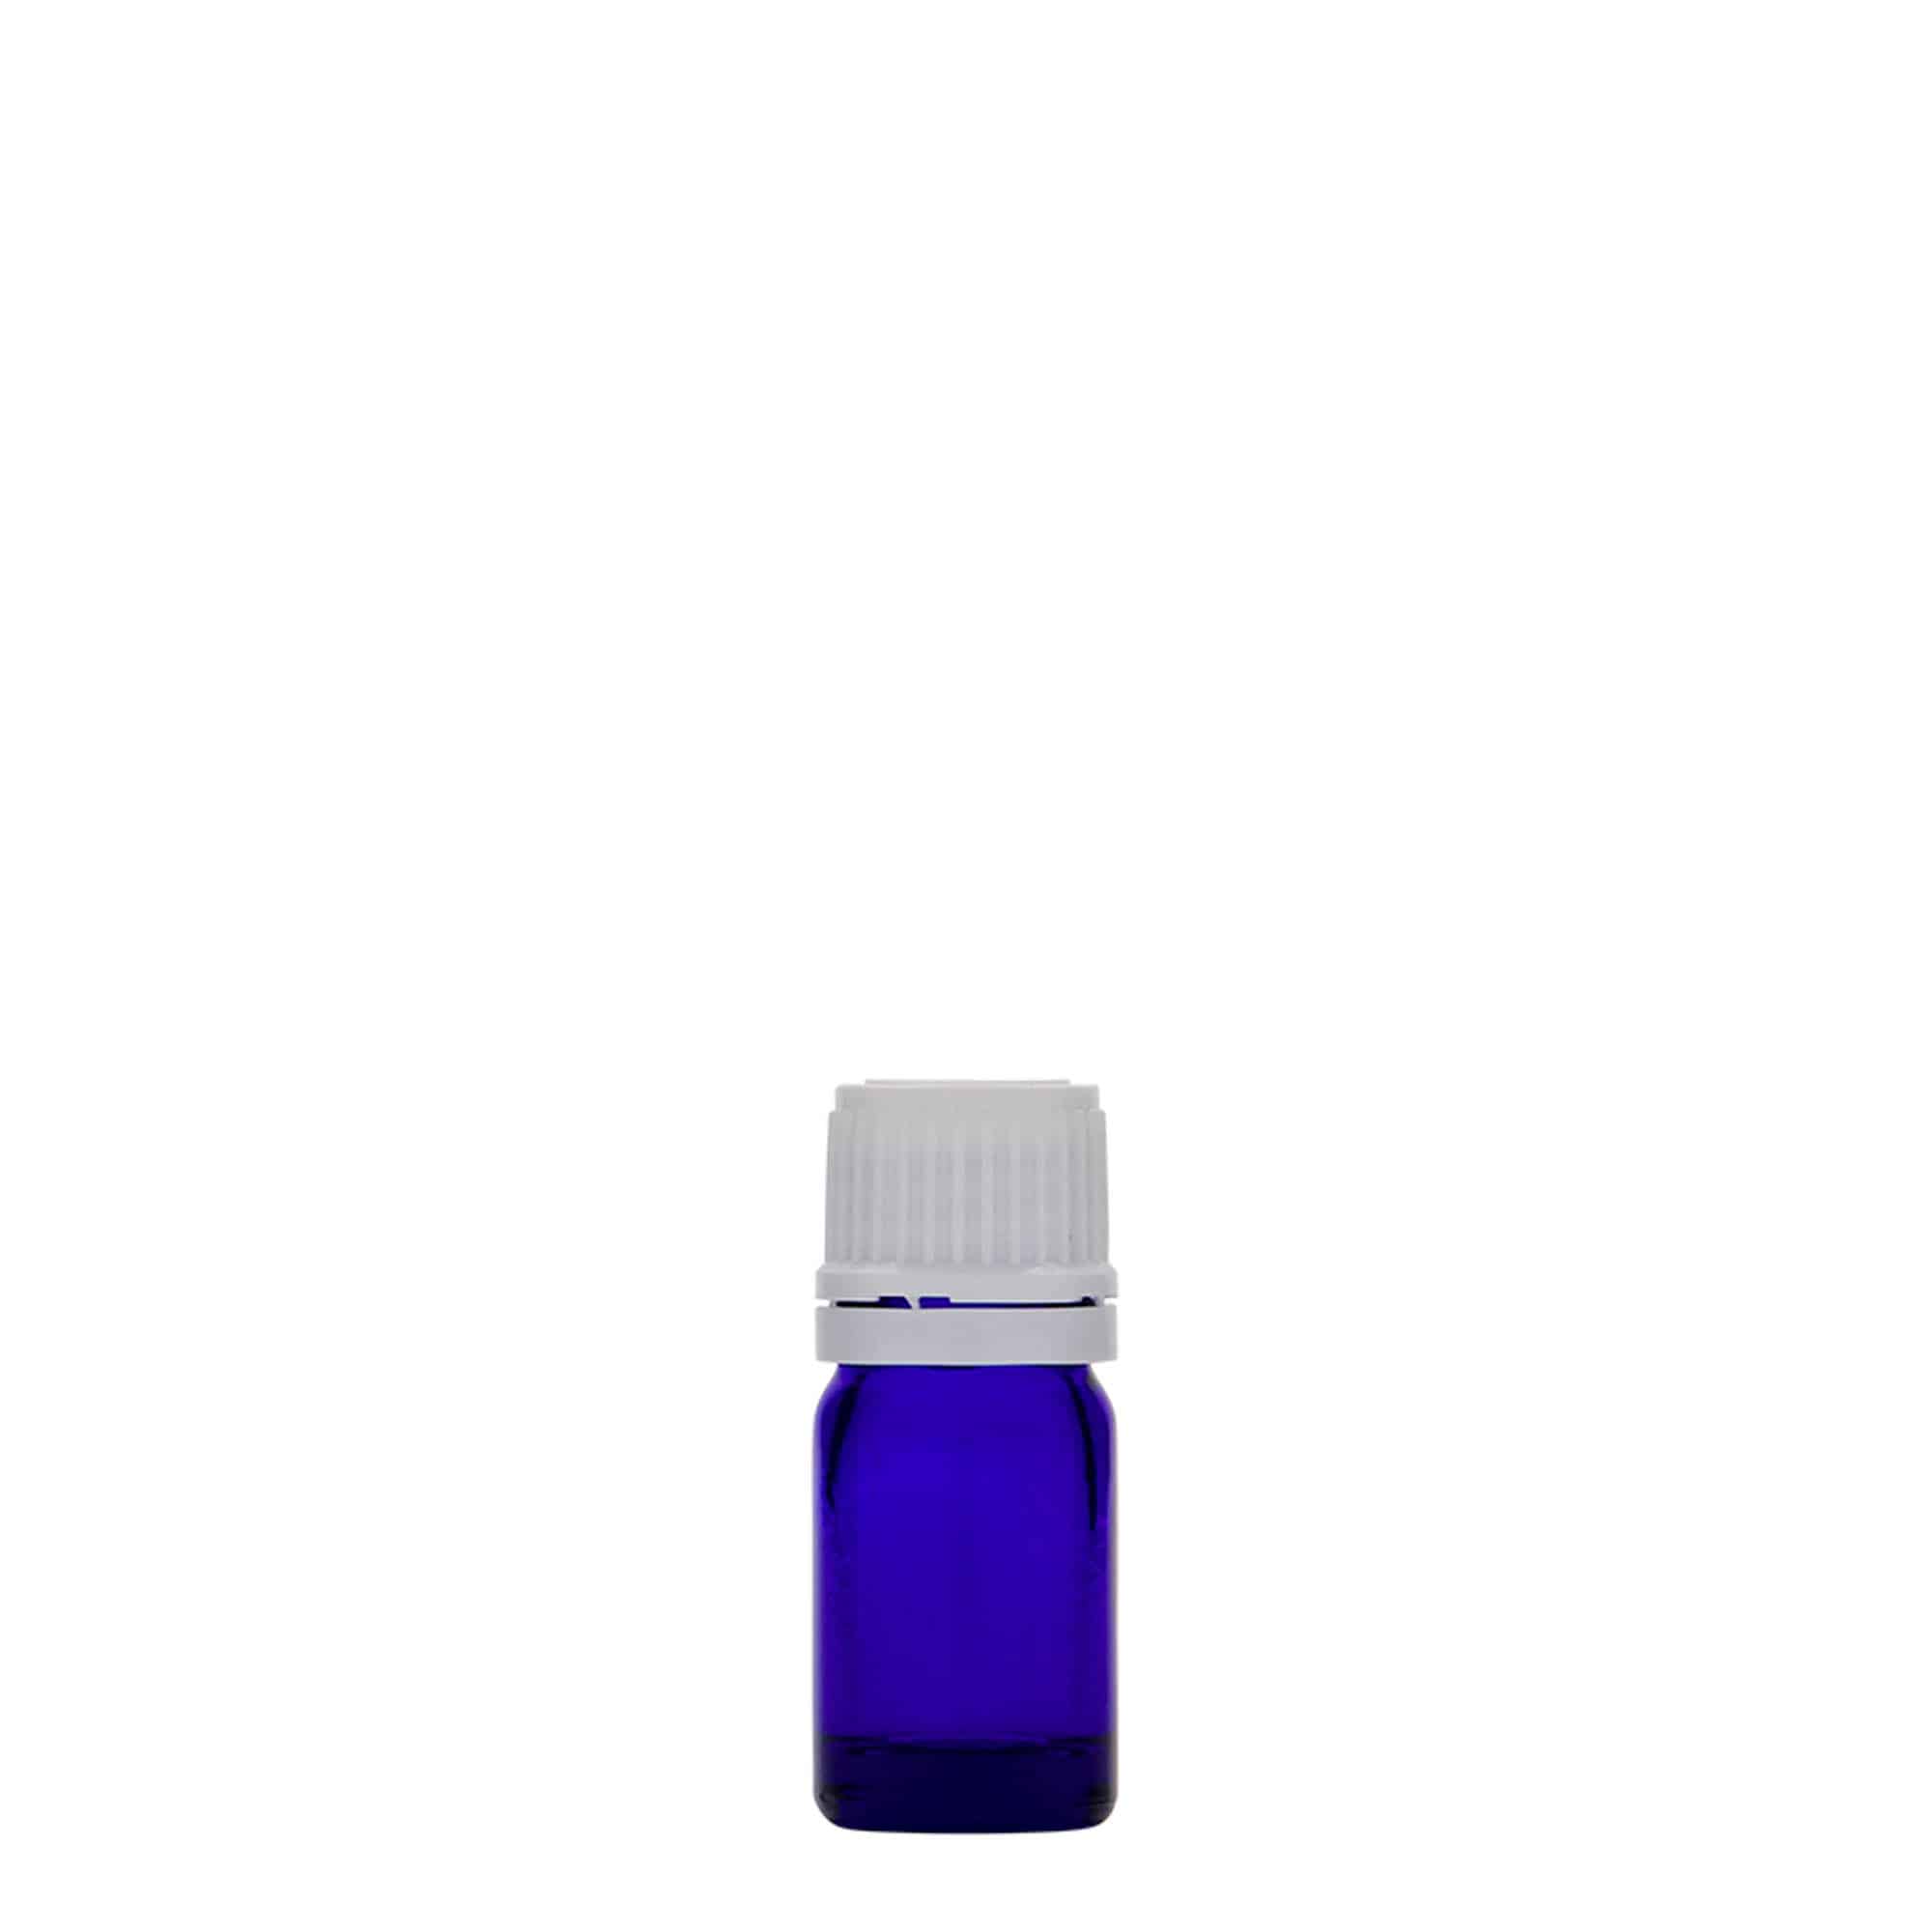 5 ml butelka farmaceutyczna, szkło, kolor błękit królewski, zamknięcie: DIN 18